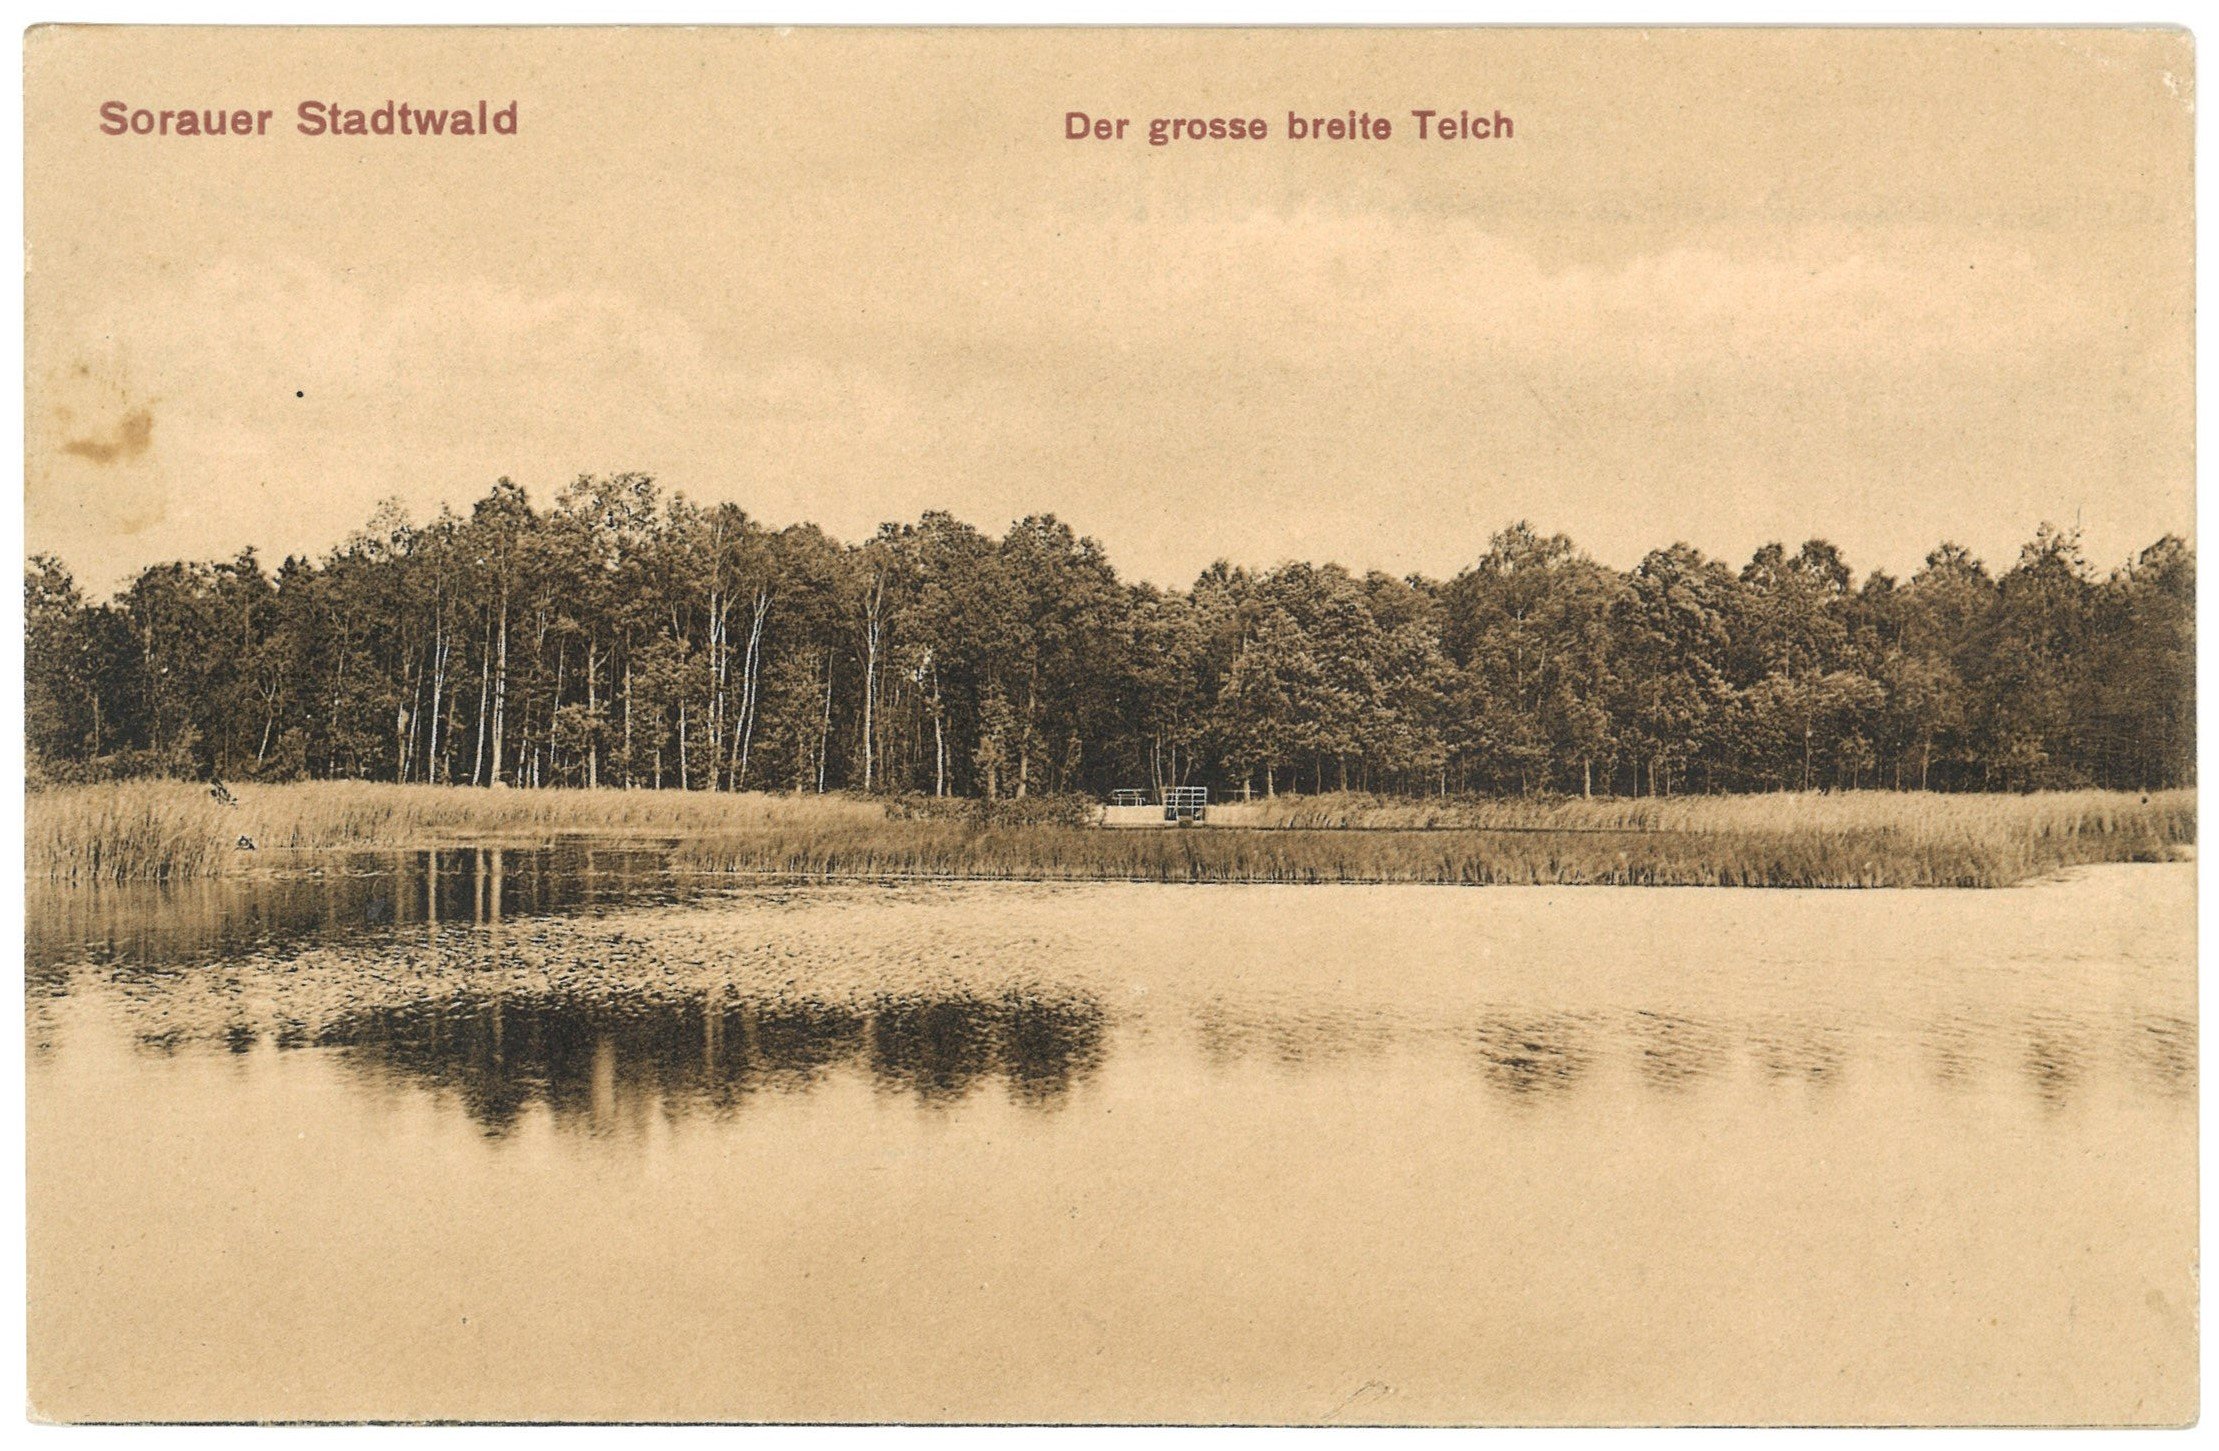 Sorau [Żary]: Teich im Stadtwald (Landesgeschichtliche Vereinigung für die Mark Brandenburg e.V. CC BY)